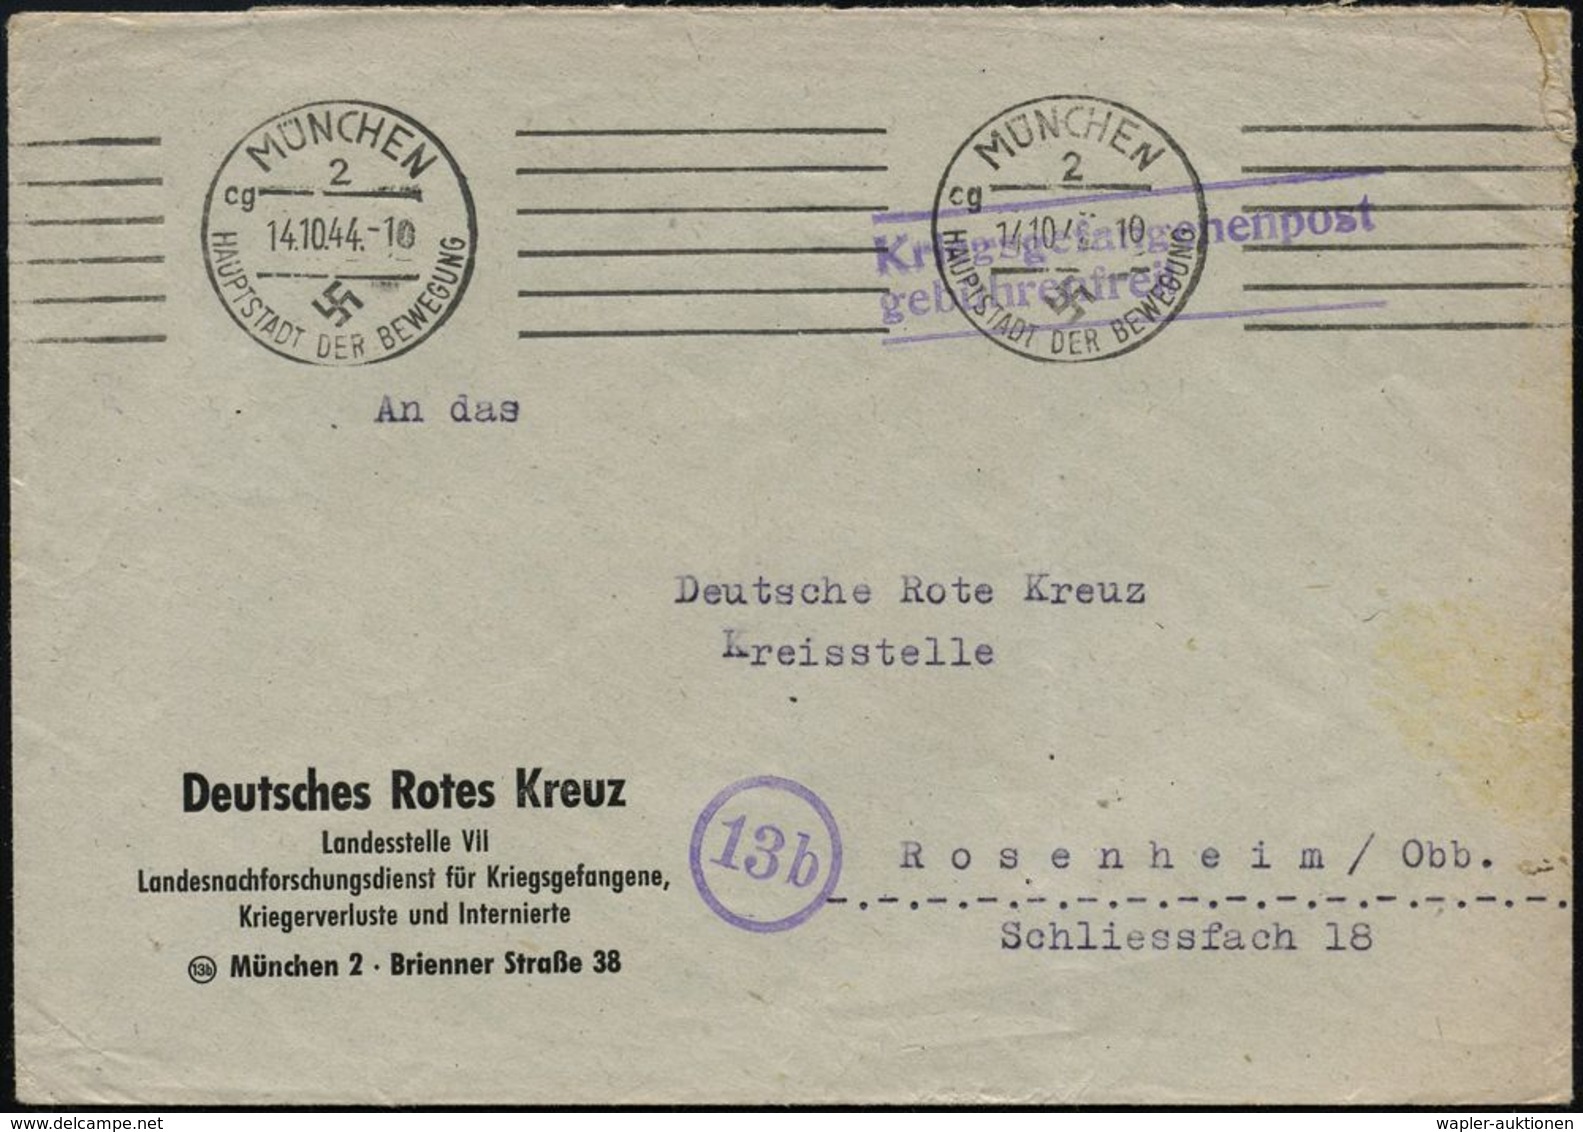 MÜNCHEN/ 2/ Cg/ HDB 1944 (14.10.) Bd.MWSt Auf Dienst-Bf.: Deutsches Rotes Kreuz.. Landesnachforschungsstelle Für Kriegsg - Red Cross